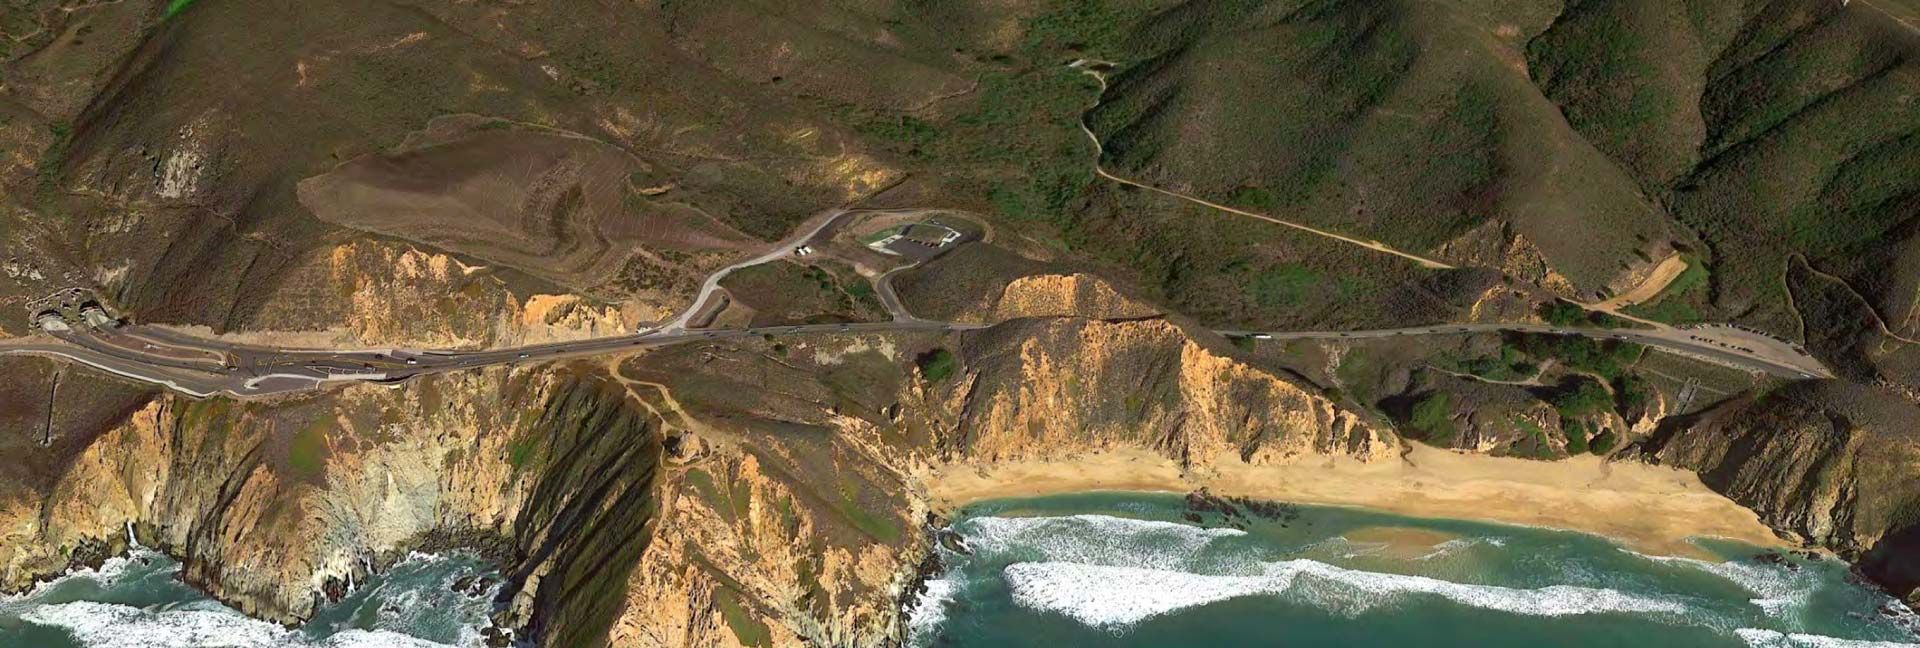 sea level rise risks on San Mateo County coast